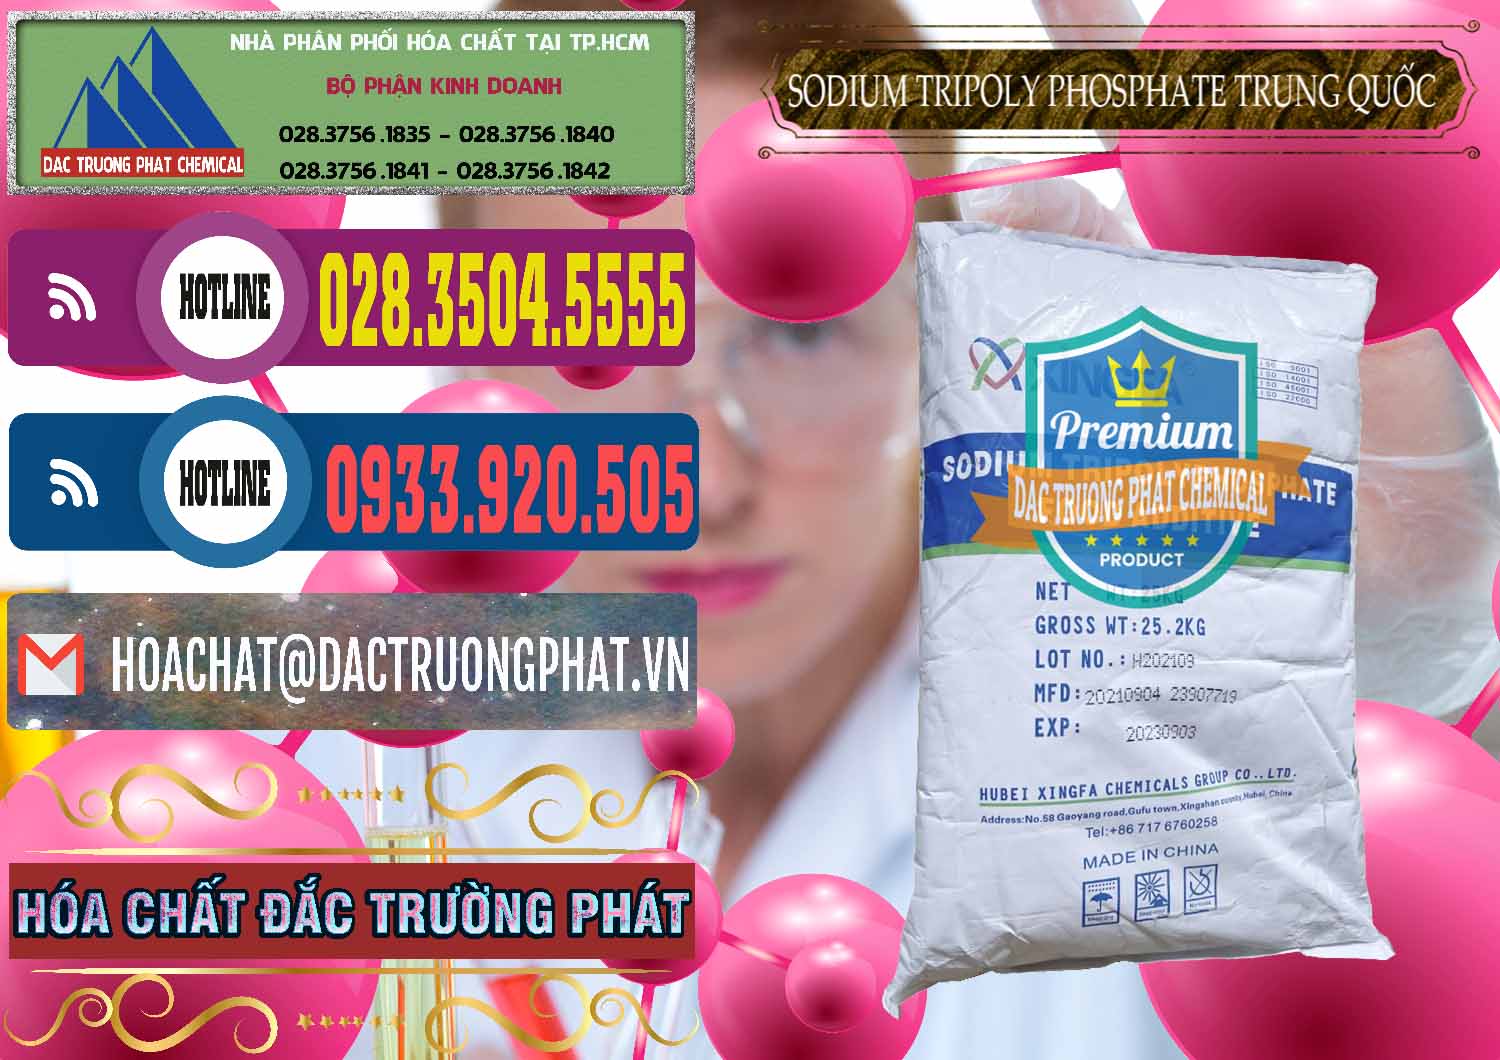 Cty chuyên bán & phân phối Sodium Tripoly Phosphate - STPP 96% Xingfa Trung Quốc China - 0433 - Cty kinh doanh & cung cấp hóa chất tại TP.HCM - muabanhoachat.com.vn